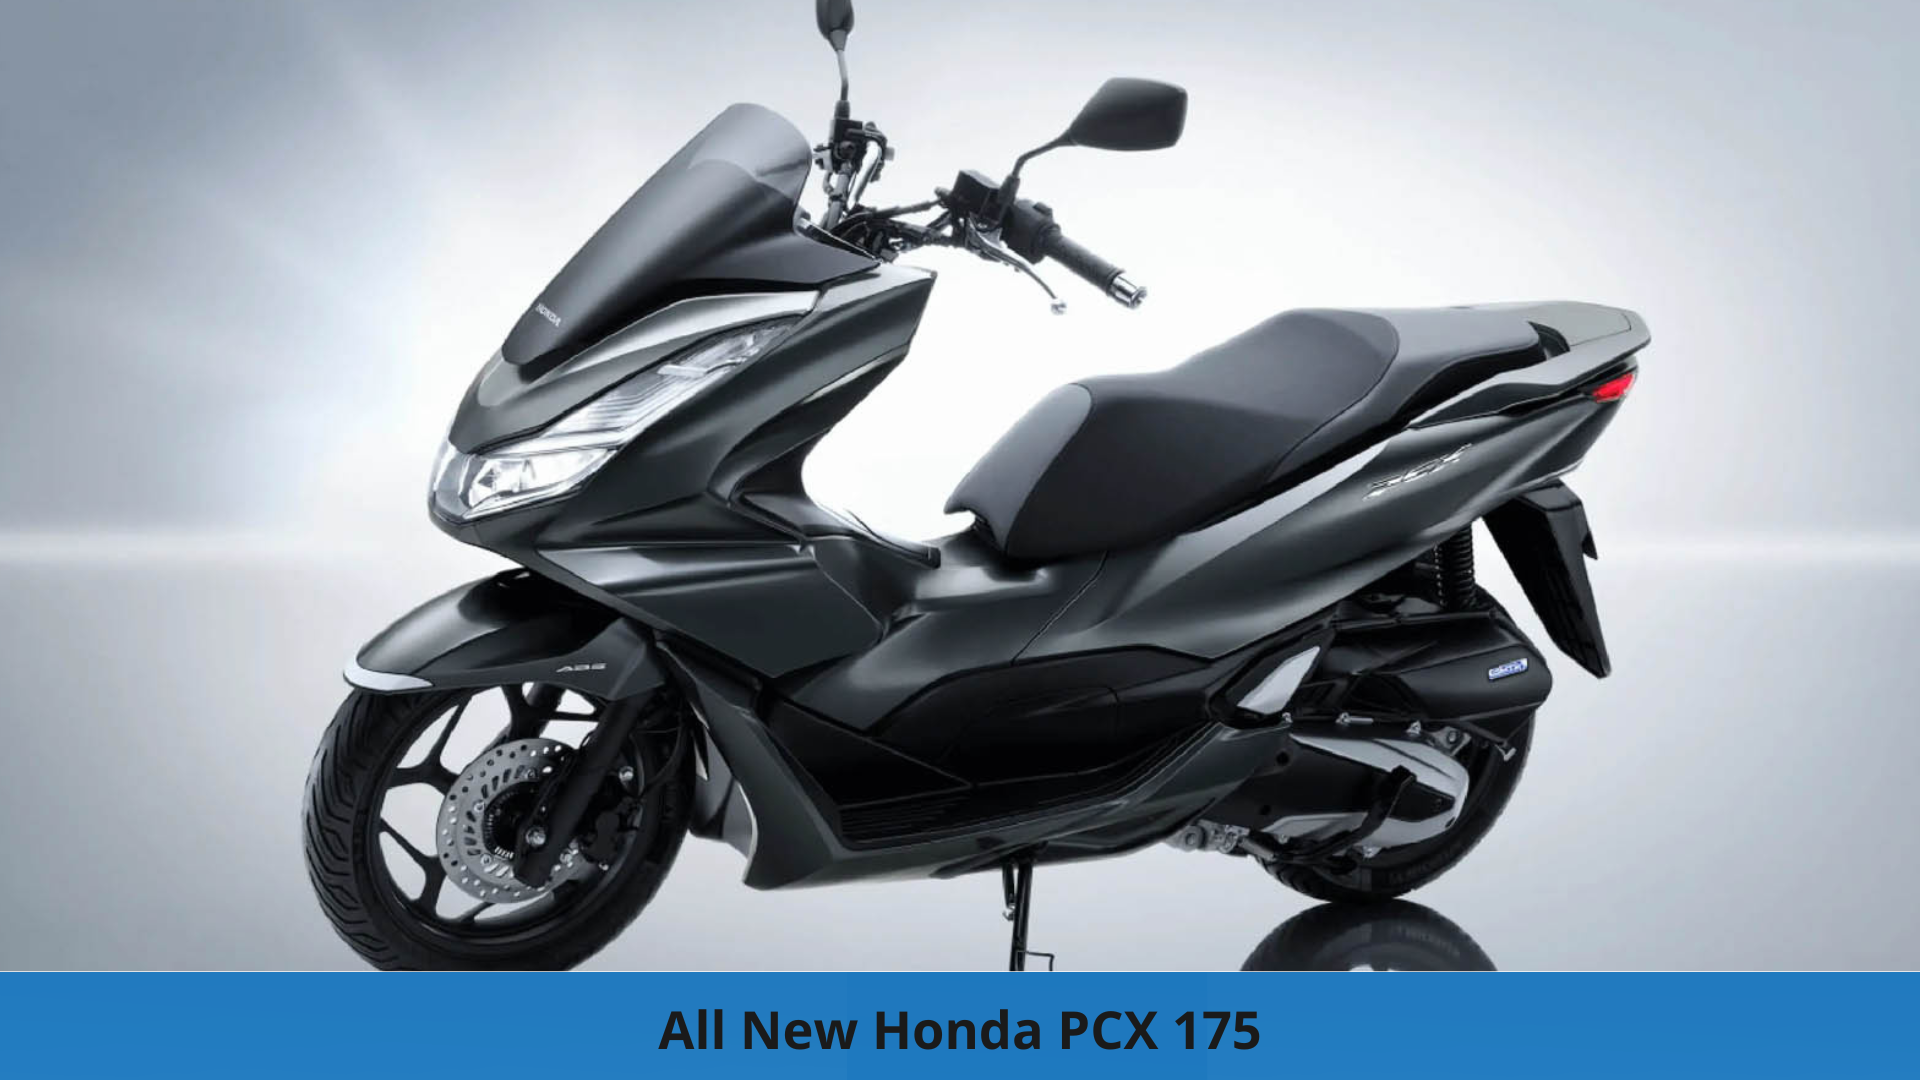 Bikin Geger! All New Honda PCX 175 Muncul dengan Tampilan Agresif Siap Hadir di Pasar Tanah Air